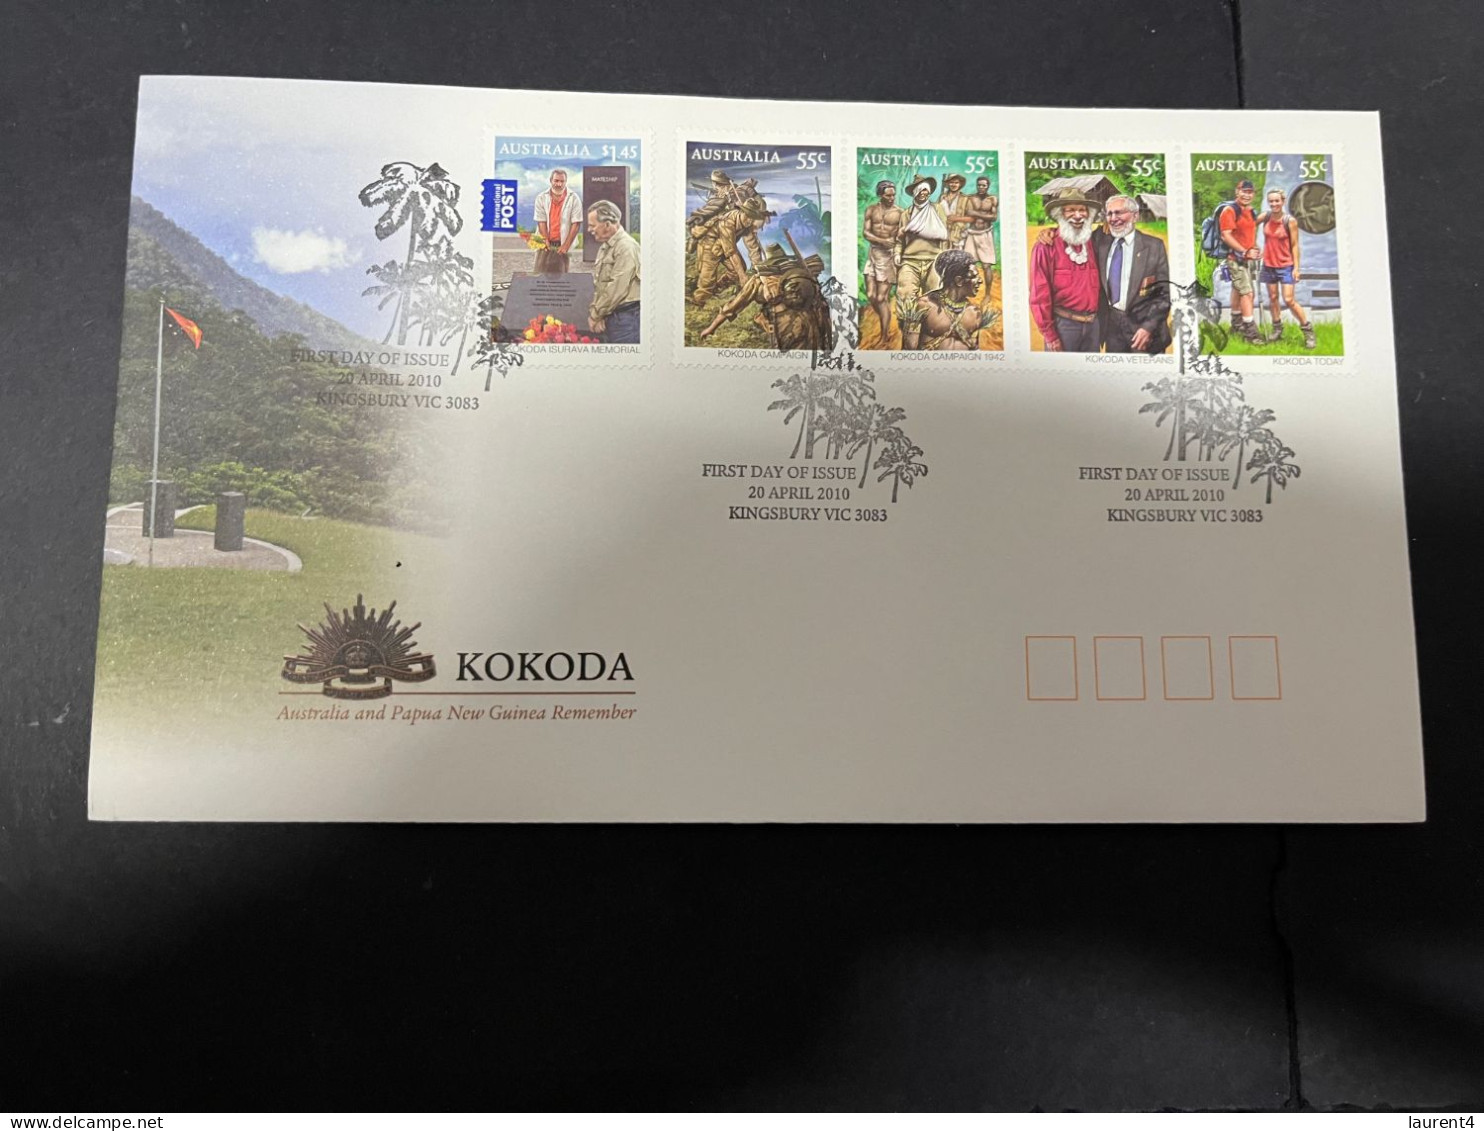 19-5-2024 (5 Z 17) Australia FDC Cover - 2010 - KOKODA (WW II Papua New Guinea) - Premiers Jours (FDC)